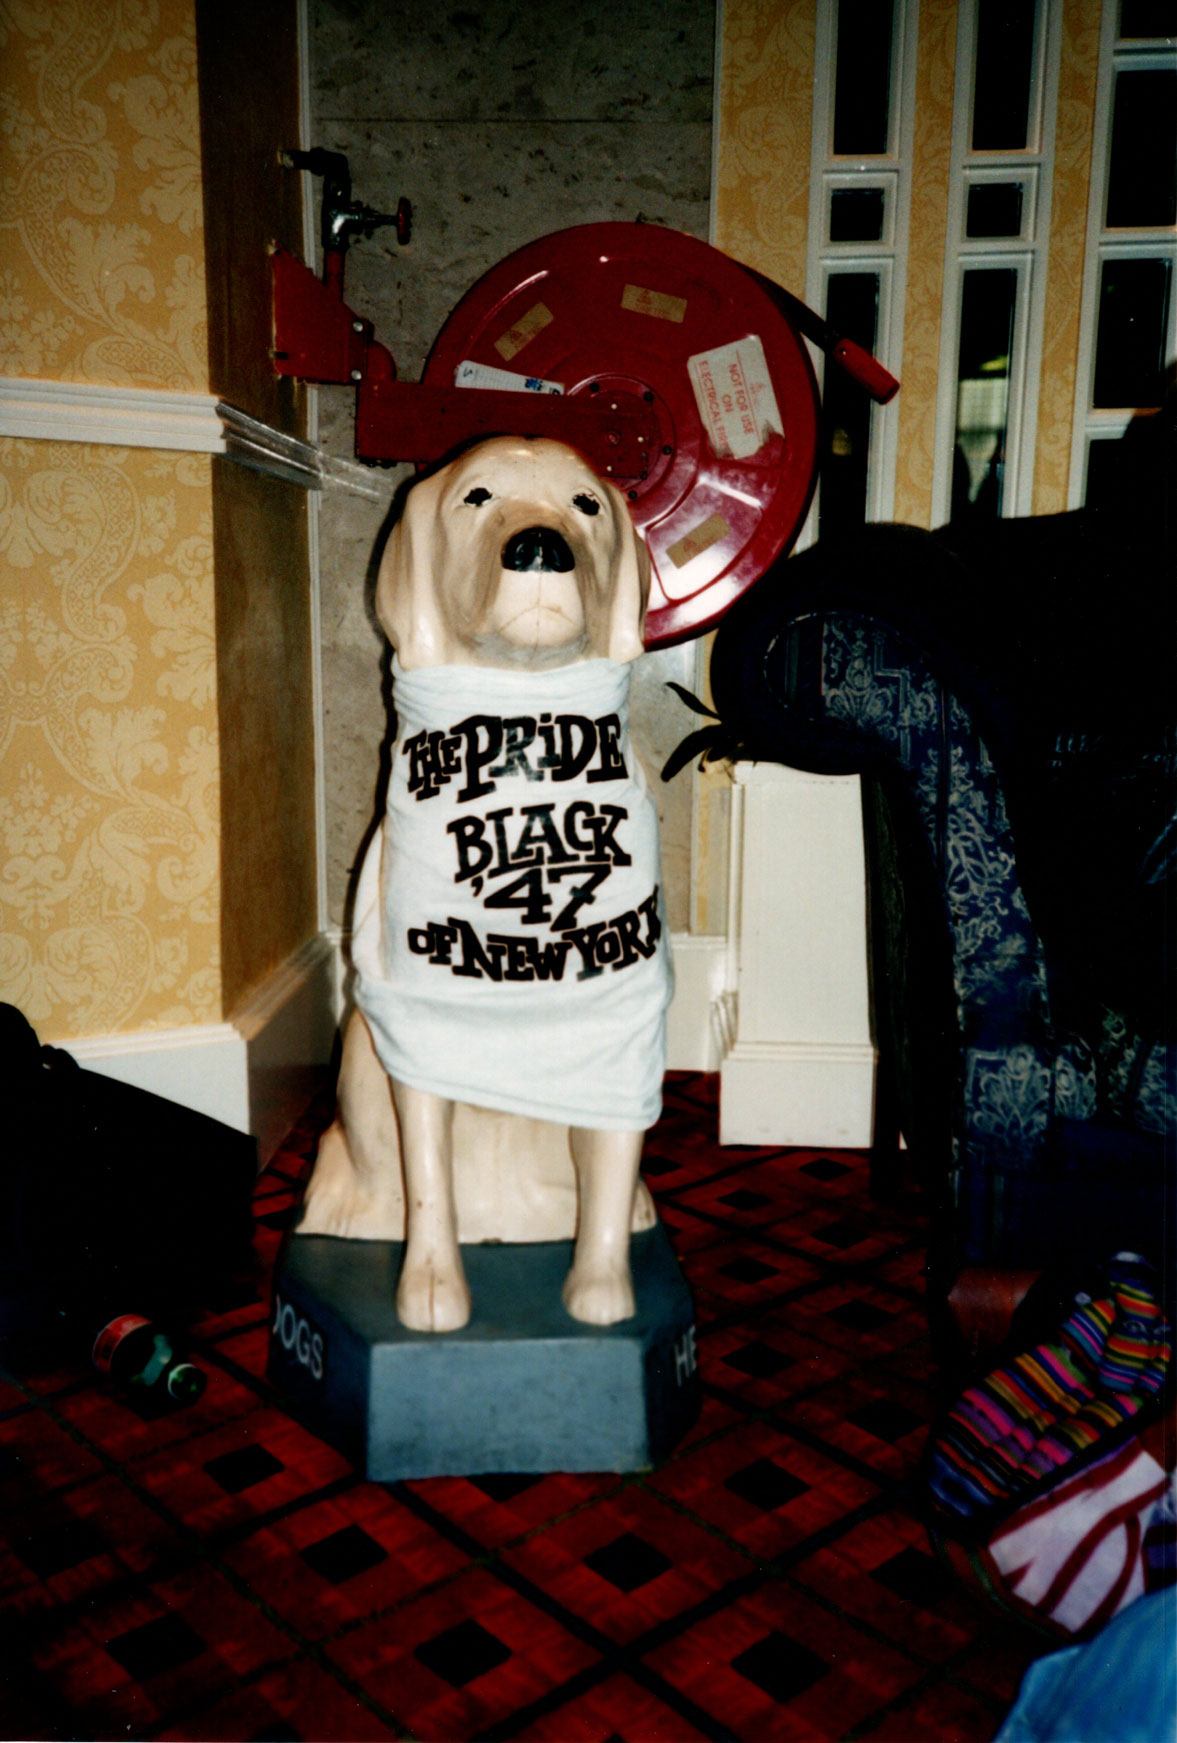 Black 47 4/27/1997 Talbot Hotel Wexford Ireland